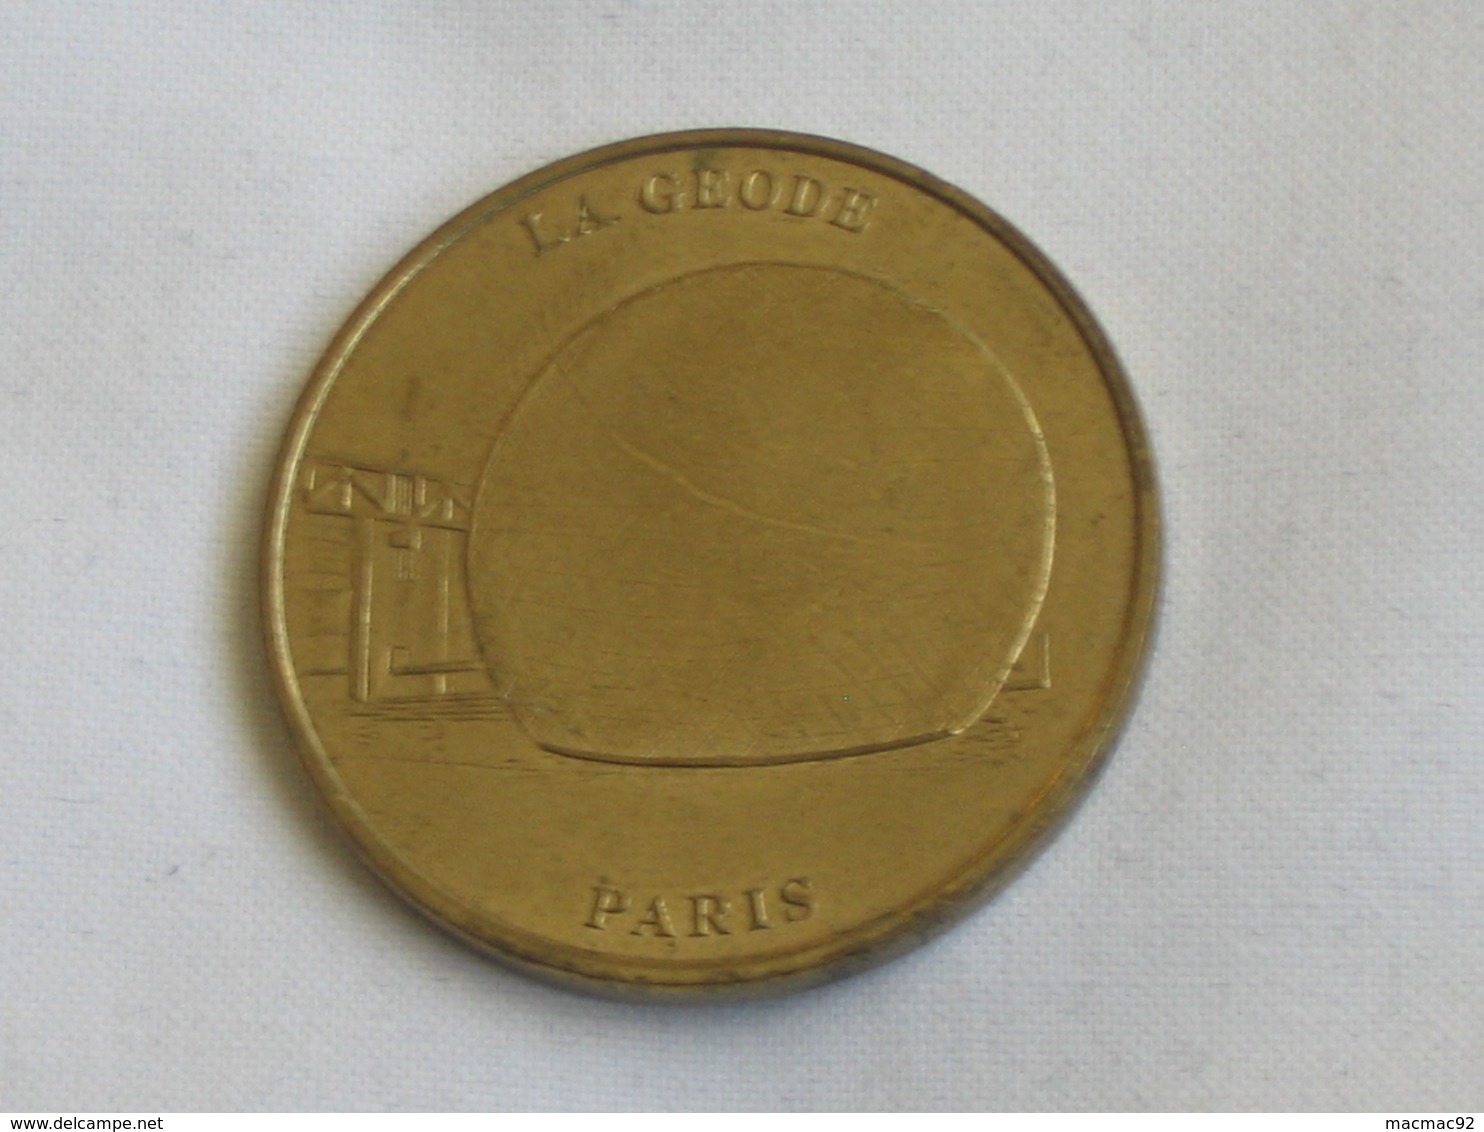 Monnaie De Paris  - LA GEODE - PARIS 1997/1998  **** EN ACHAT IMMEDIAT  **** - Non-datés